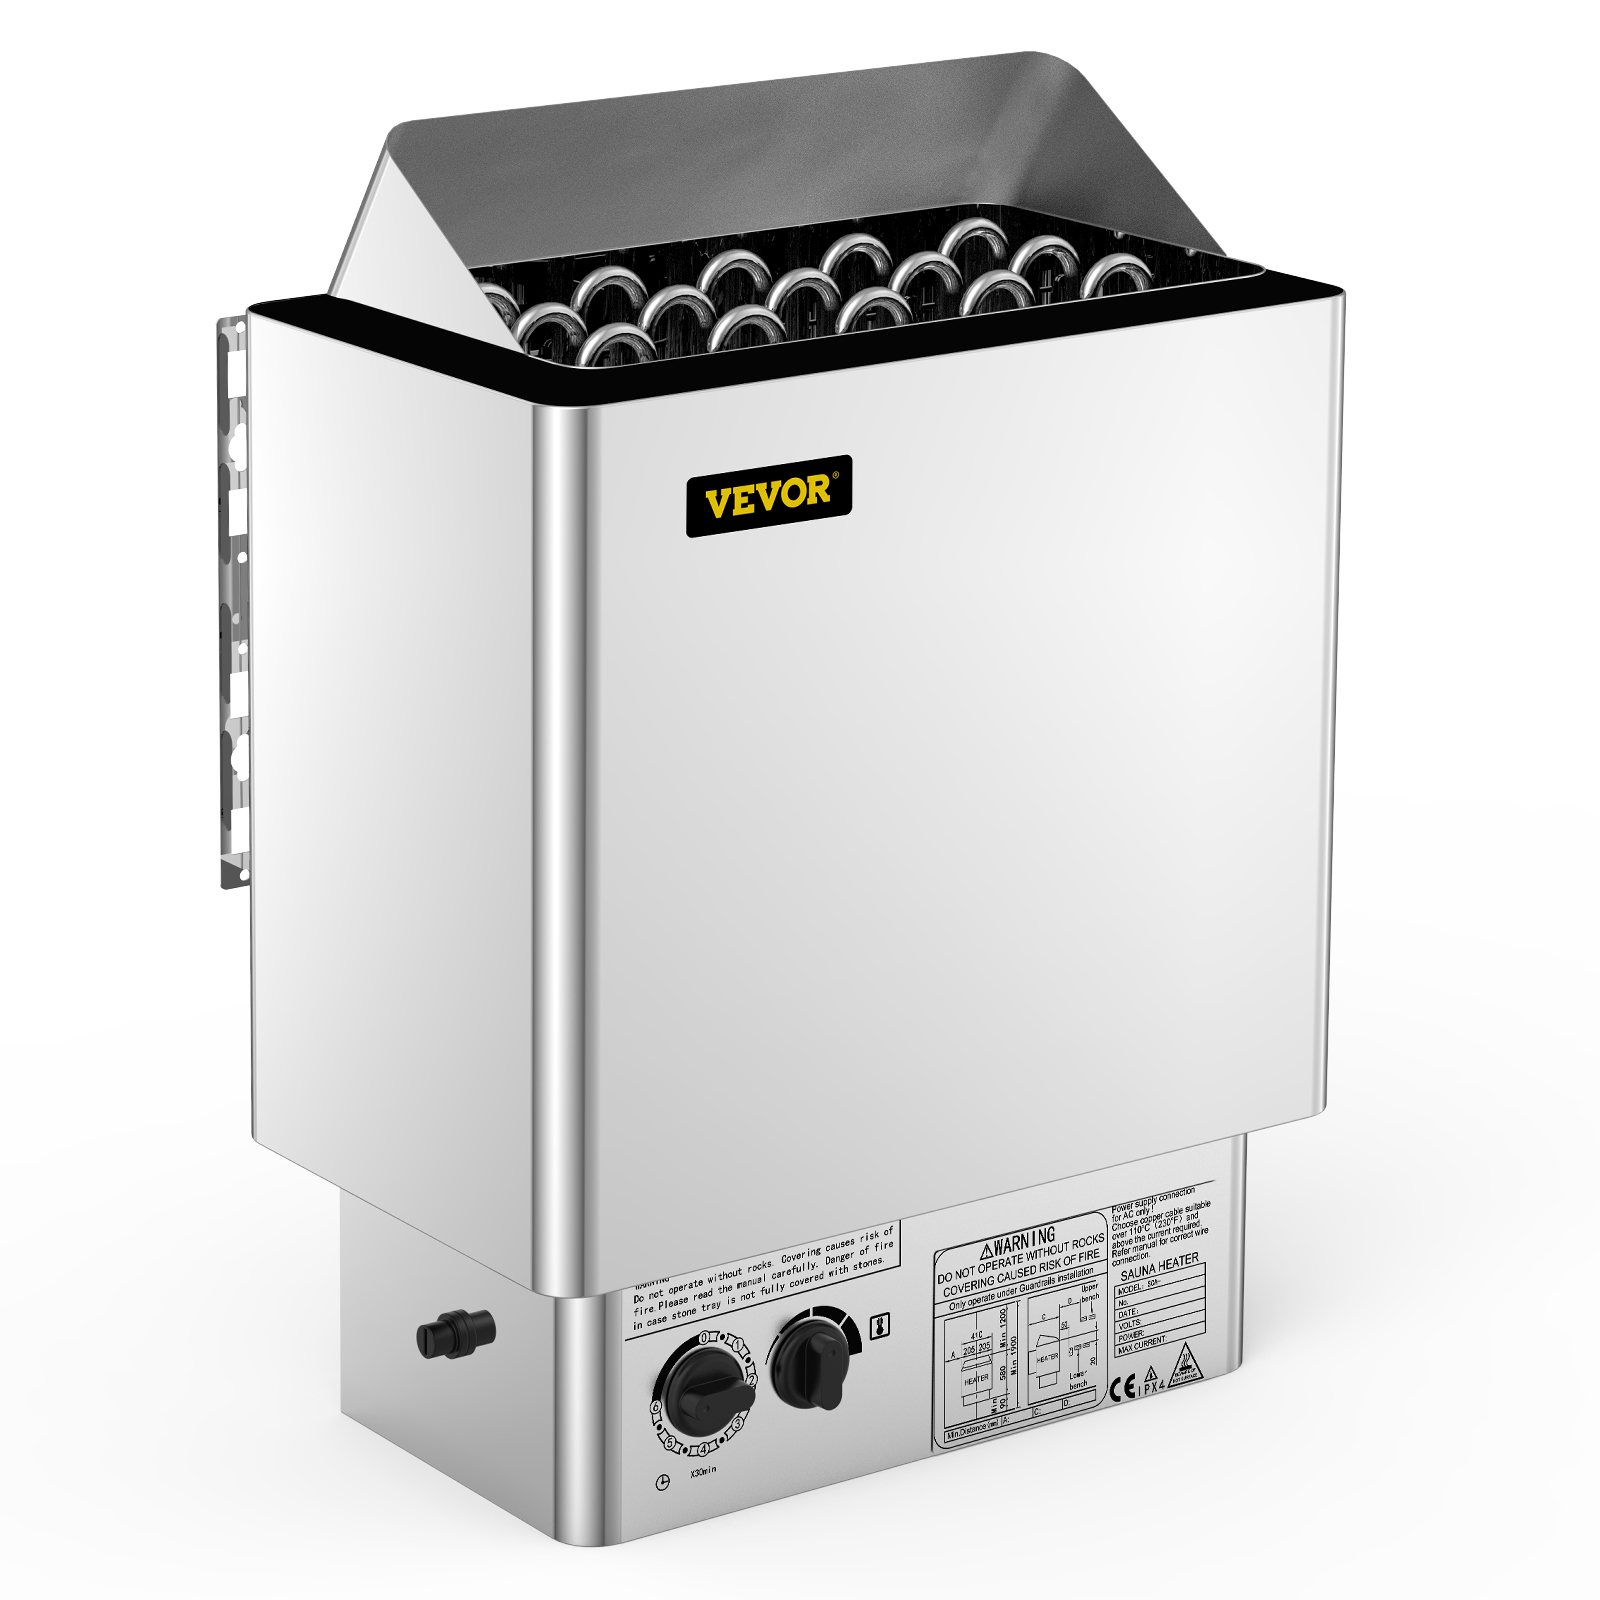 VEVOR VEVOR 9KW Sauna Heater Stove 380V-415V Wet&Dry Electric Sauna Heater  with Built-in Control Unit Stainless Steel Sauna Heater | VEVOR EU